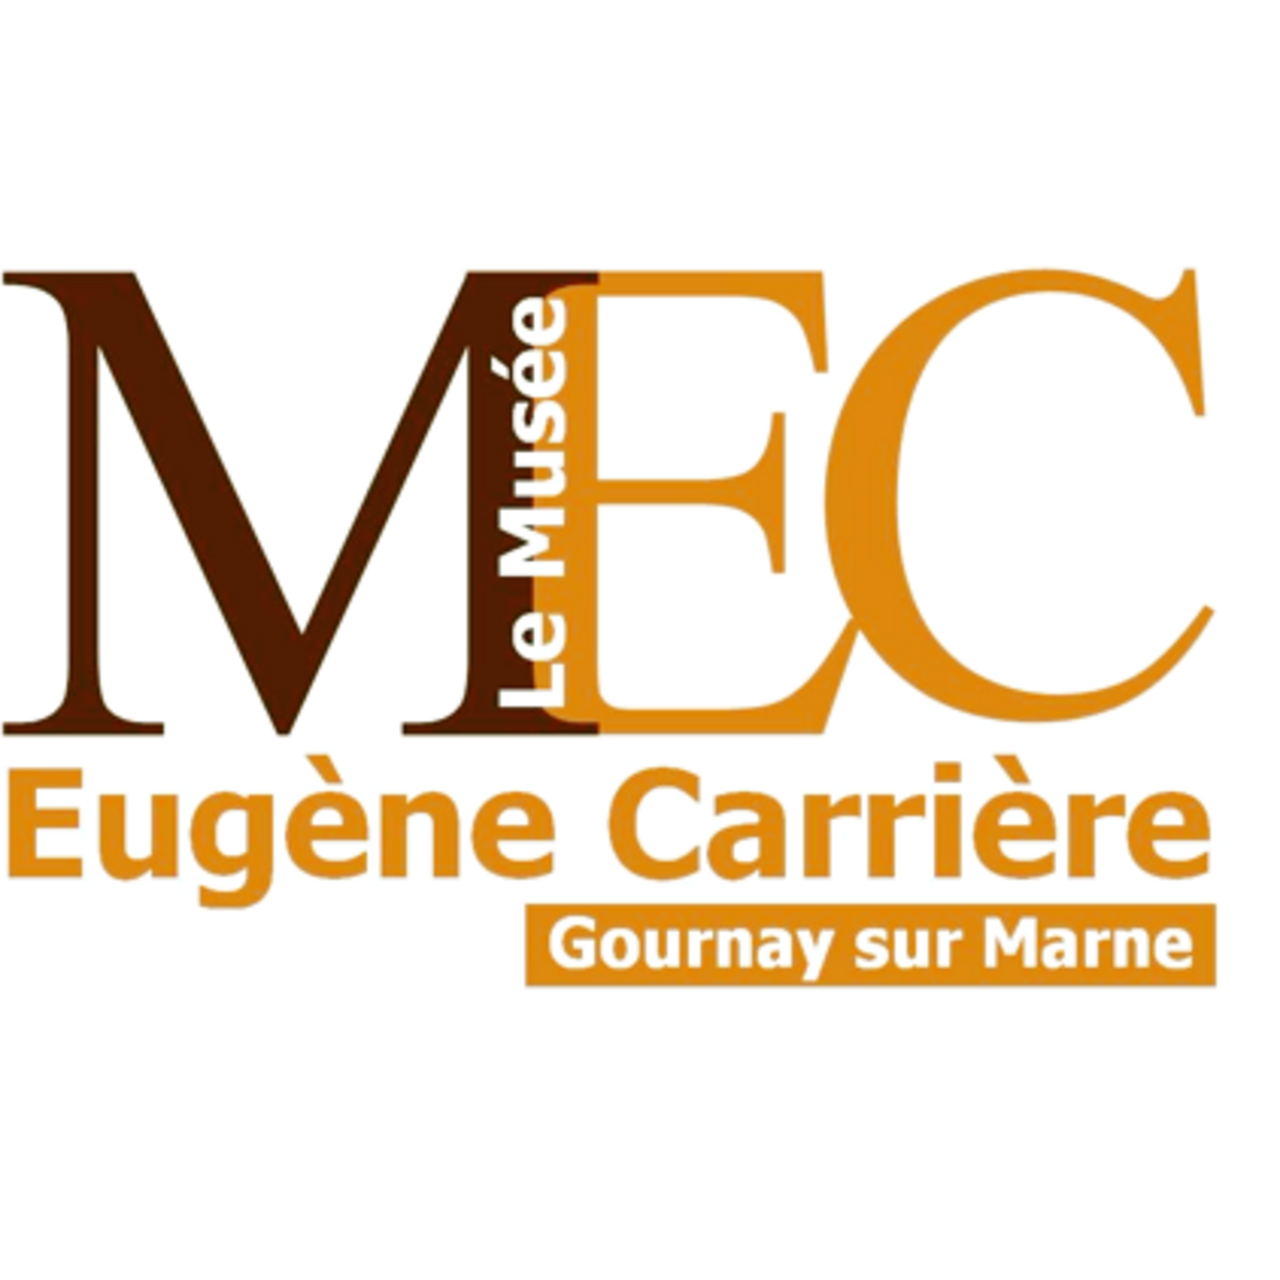 Musée Eugène Carrière (Gournay sur Marne, 77)